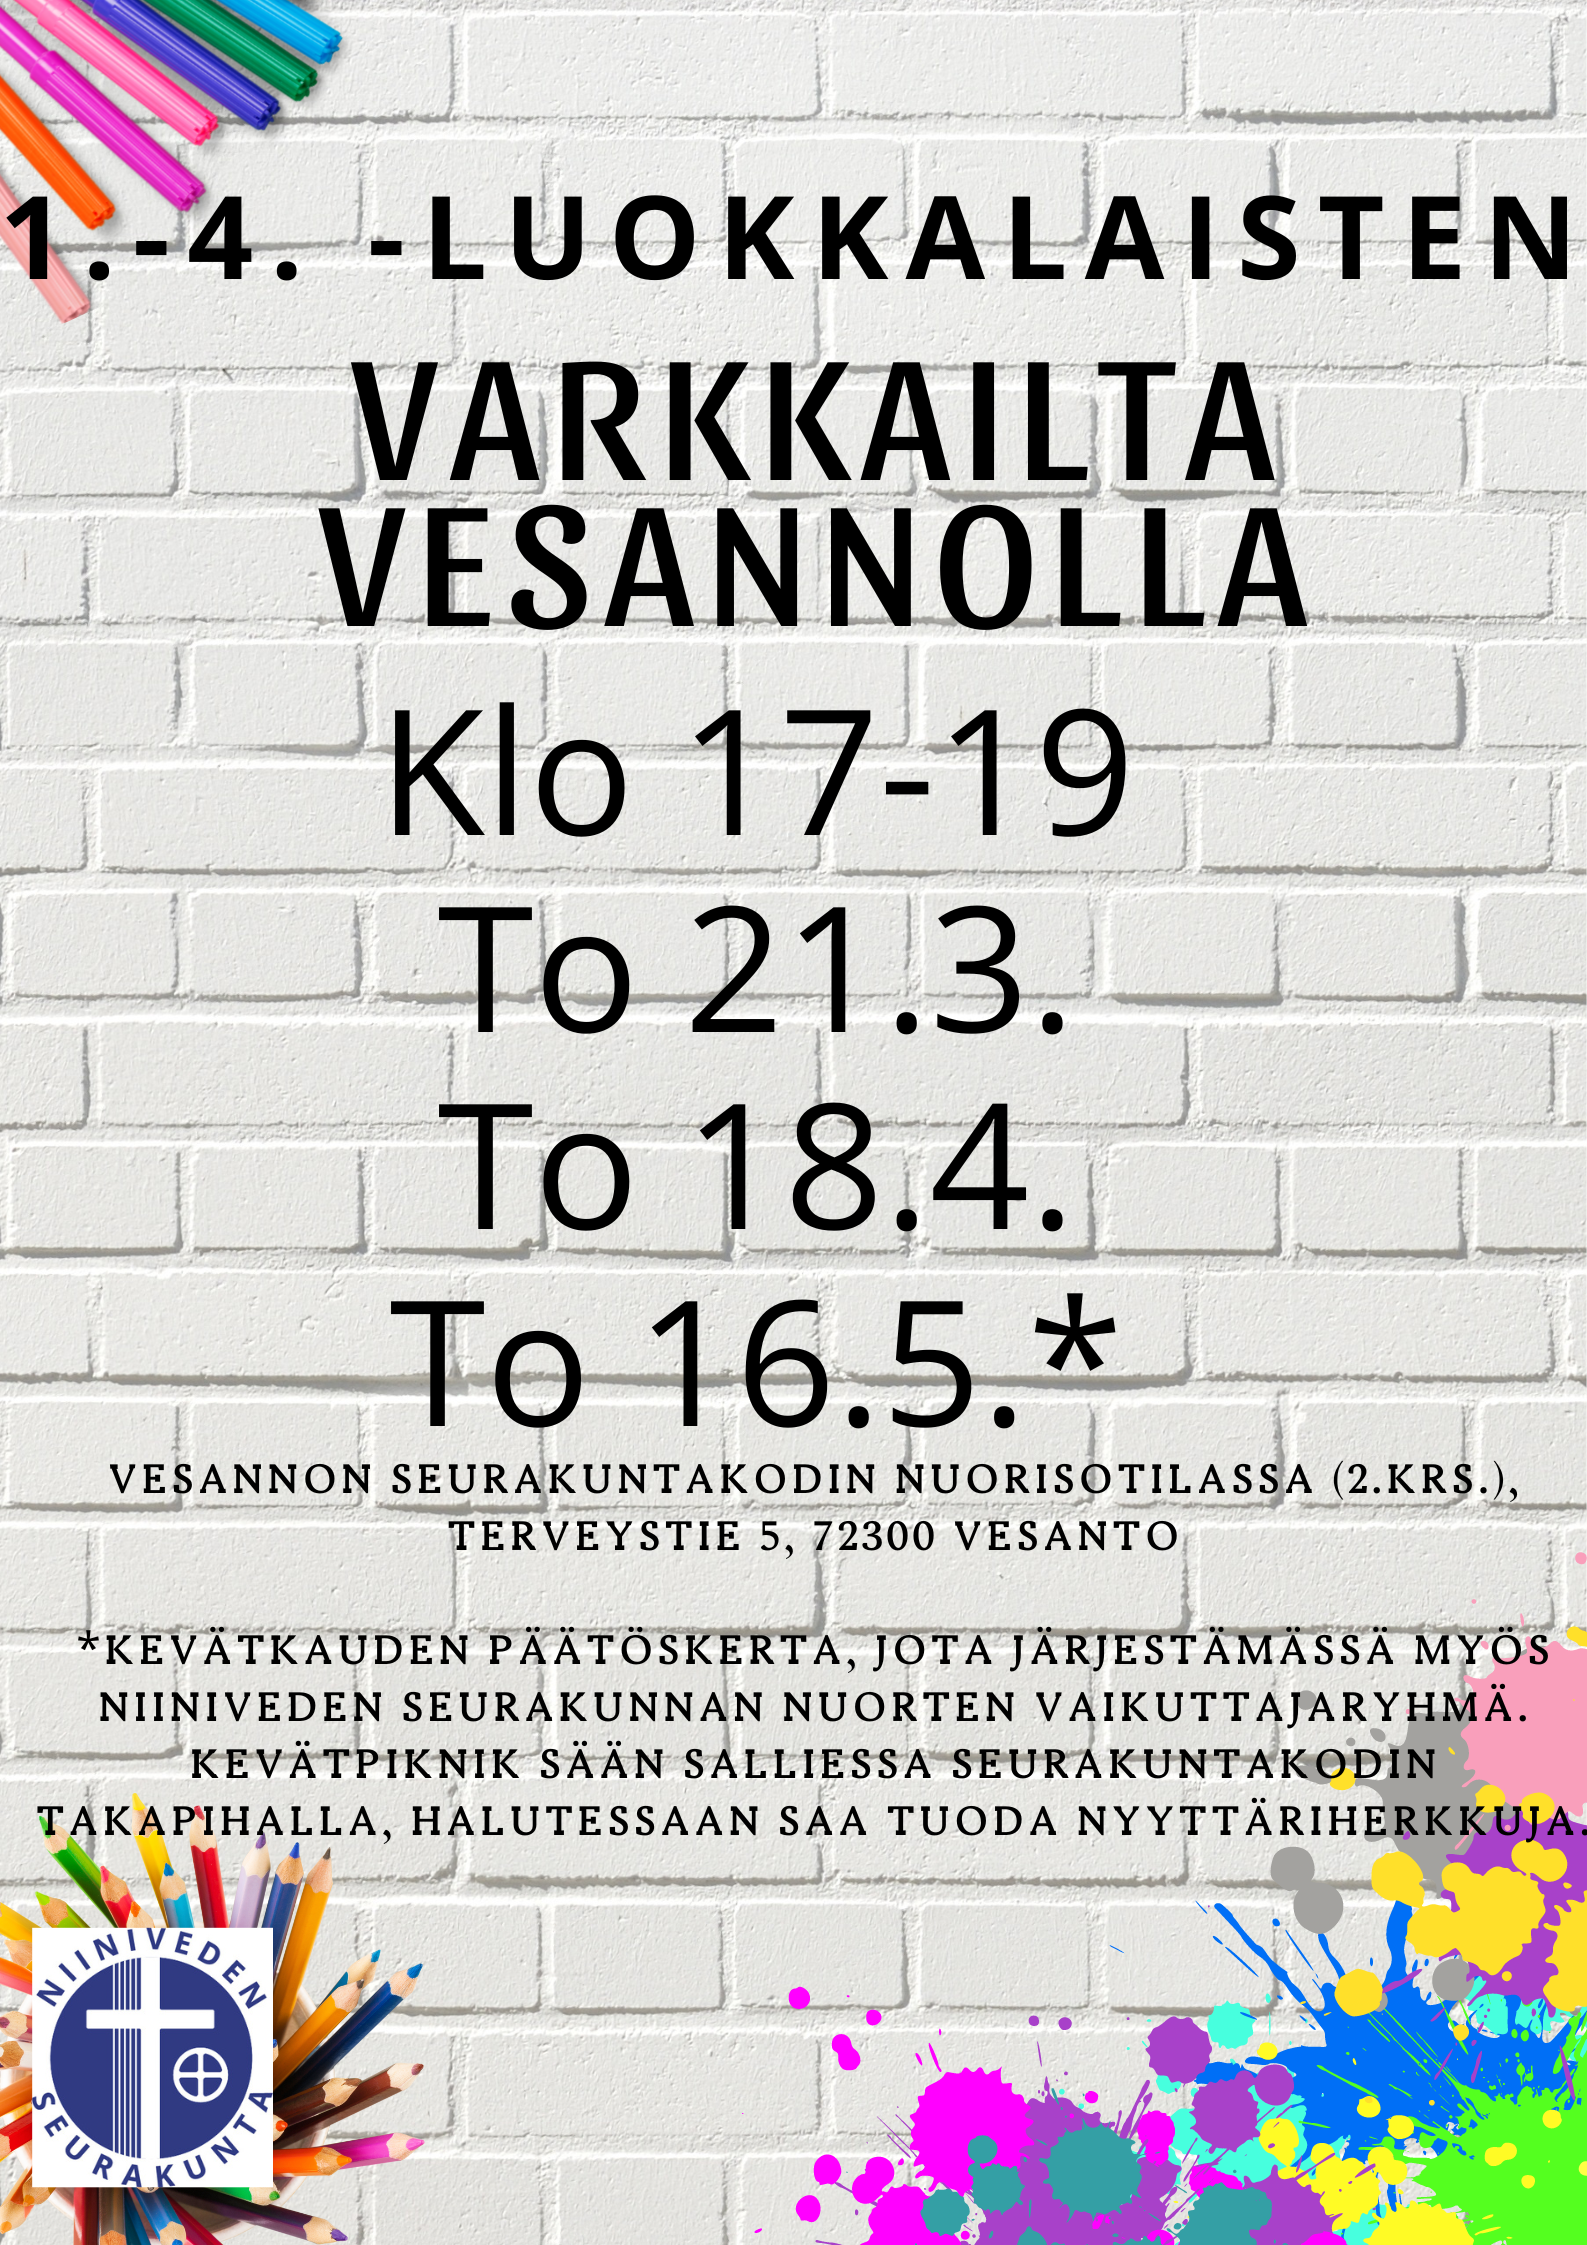 Varkkailta Vesannolla 1.-4.-luokkalaisille klo 17-19 21.3., 18.4. ja 16.5.